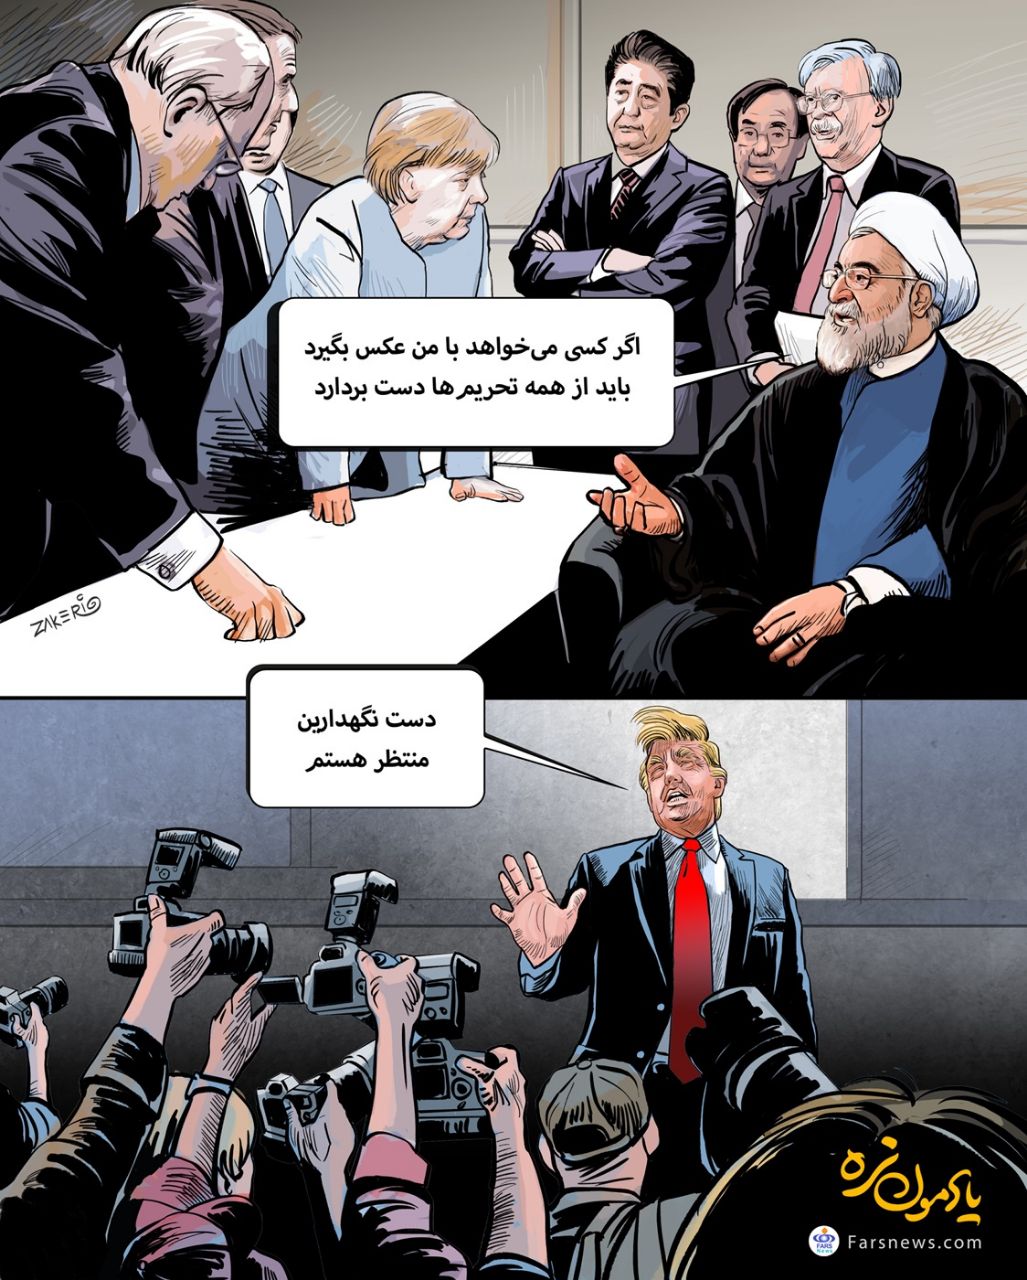 سنت شکنی فارس: انتشار کاریکاتور یک روحانی!